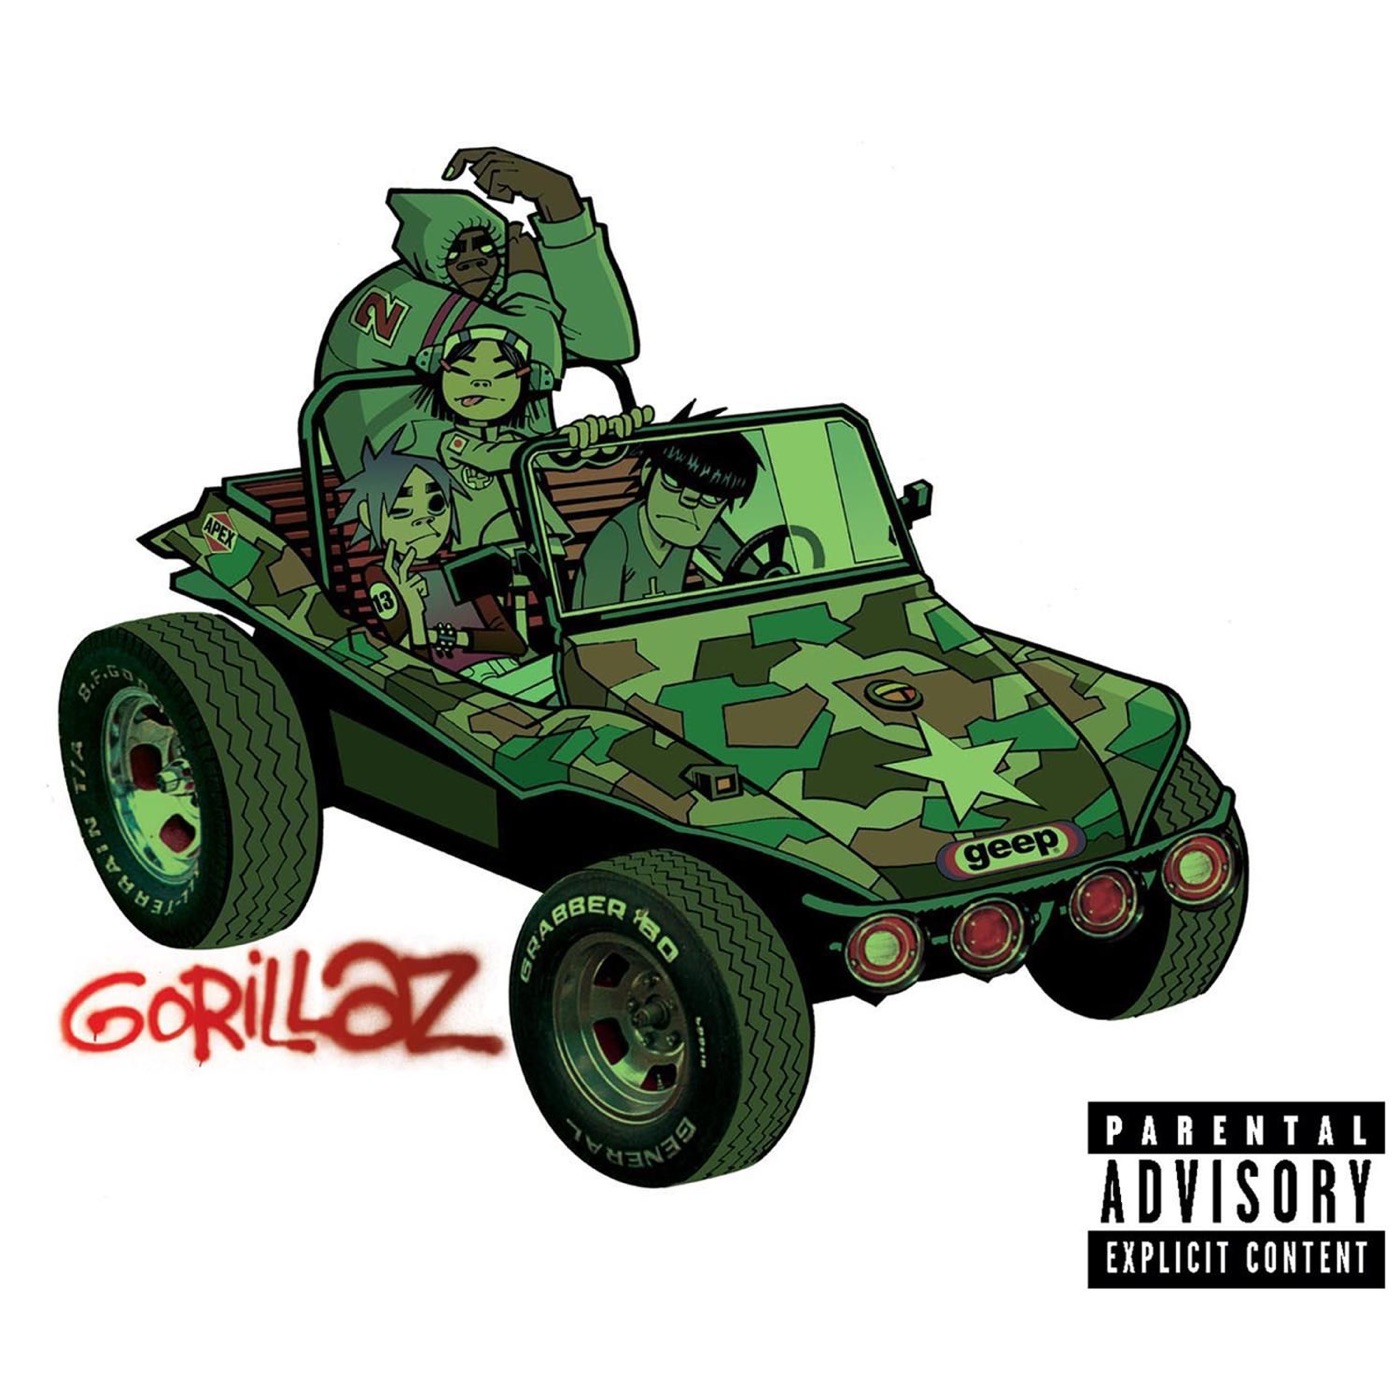 Gorillaz by Gorillaz